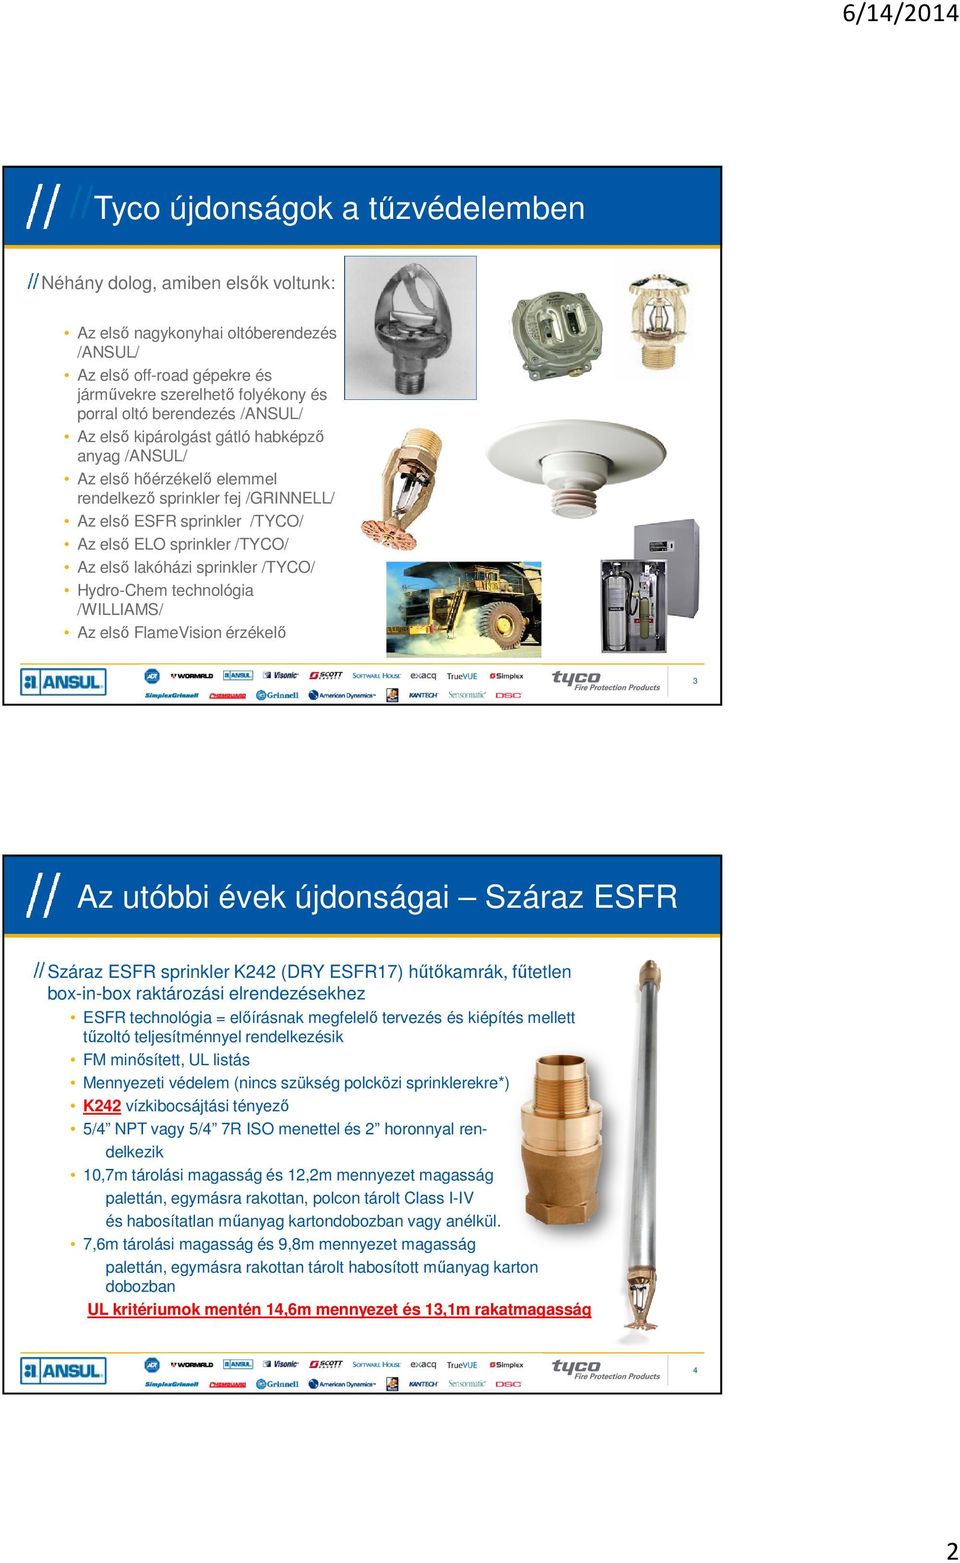 sprinkler /TYCO/ Hydro-Chem technológia /WILLIAMS/ Az első FlameVision érzékelő 3 Az utóbbi évek újdonságai Száraz ESFR Száraz ESFR sprinkler K242 (DRY ESFR17) hűtőkamrák, fűtetlen box-in-box